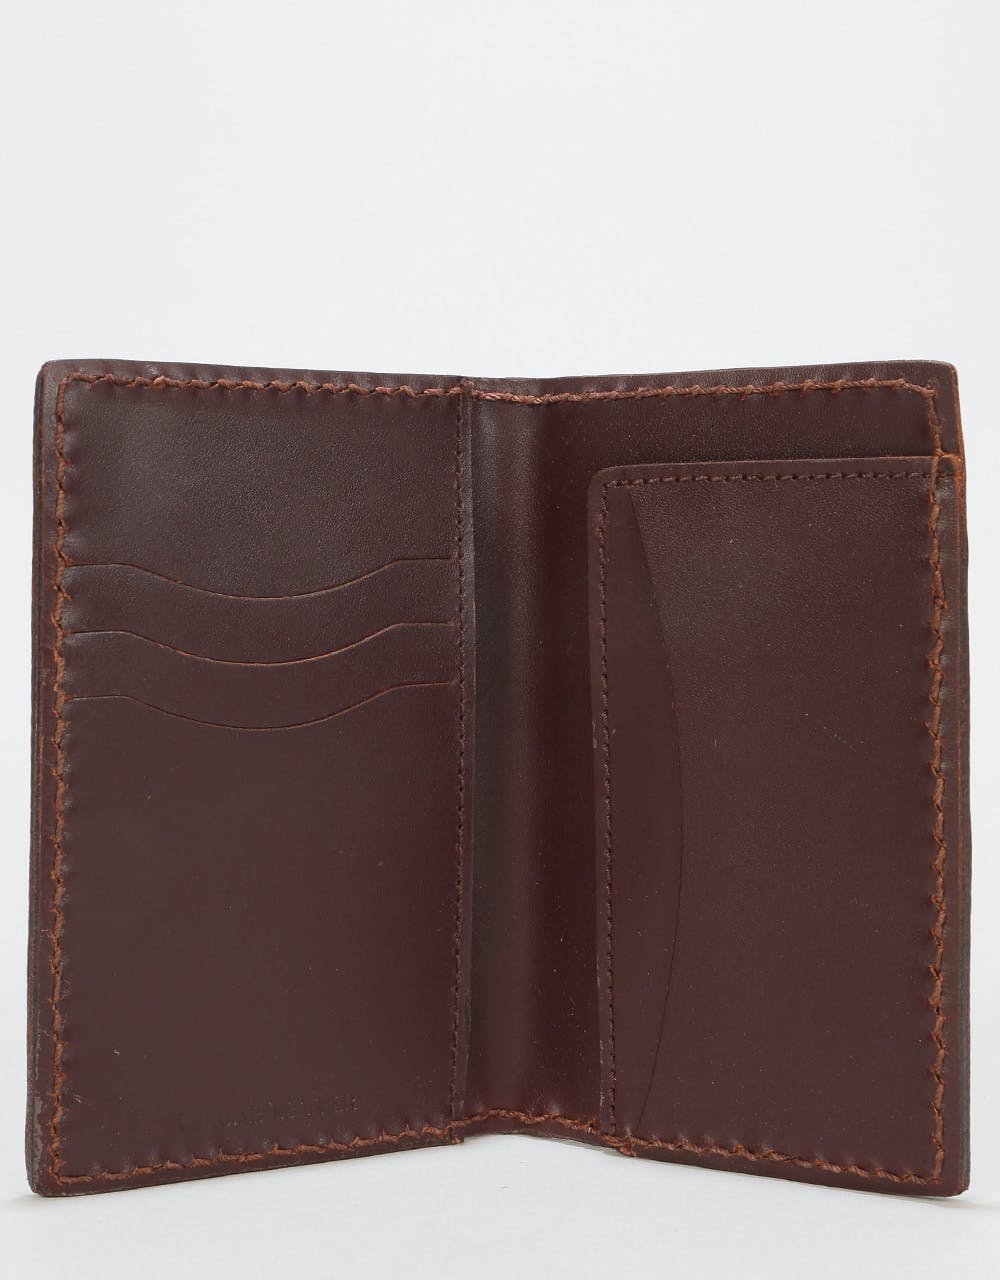 Dickies Elkton Leather Wallet - Dark Brown